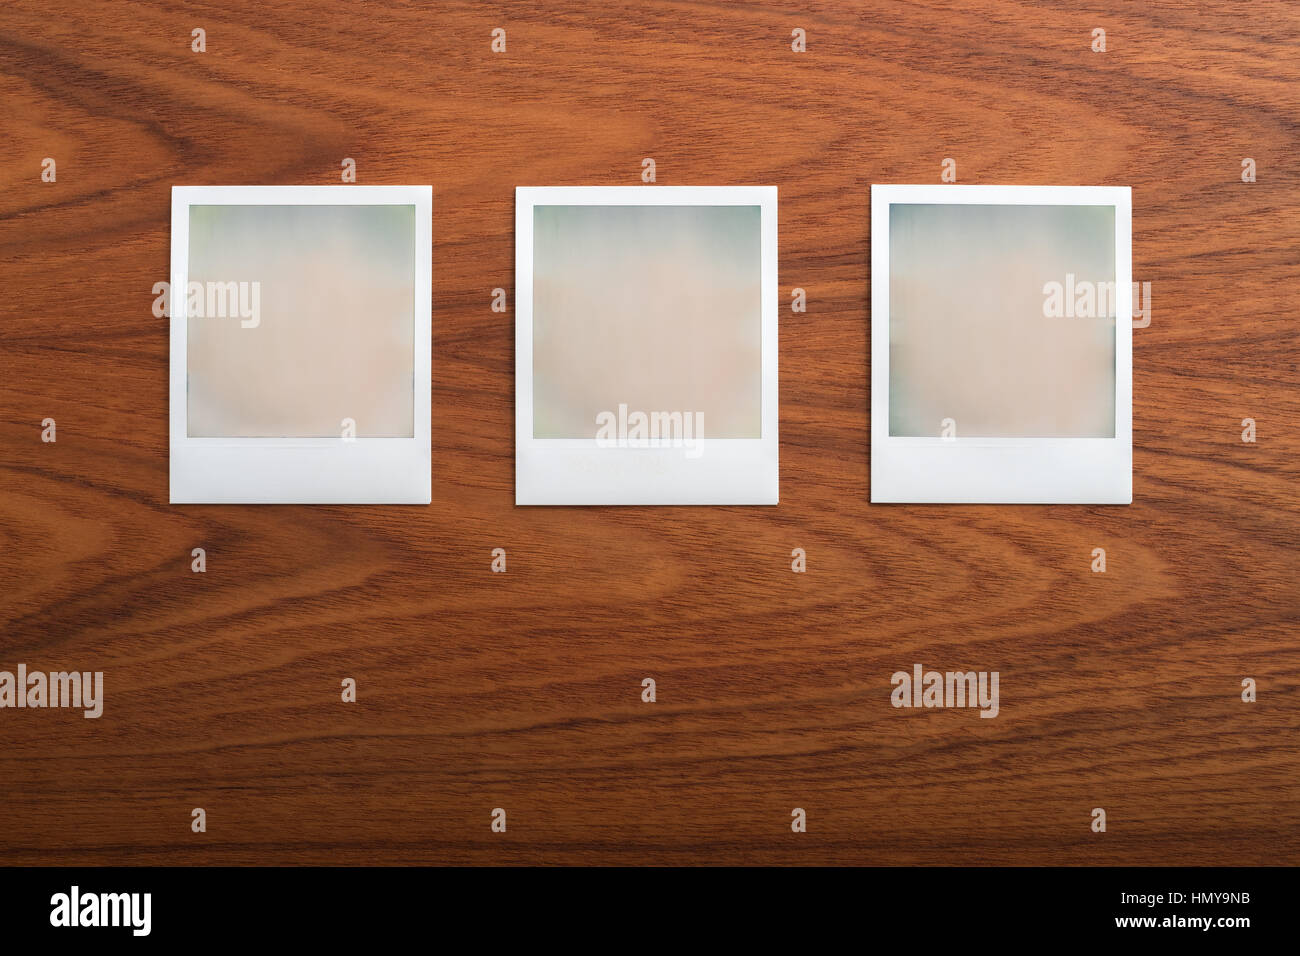 Vuoto stampa istantanea di fotografie su un tavolo di legno. Tre oggetti in una fila. Foto Stock